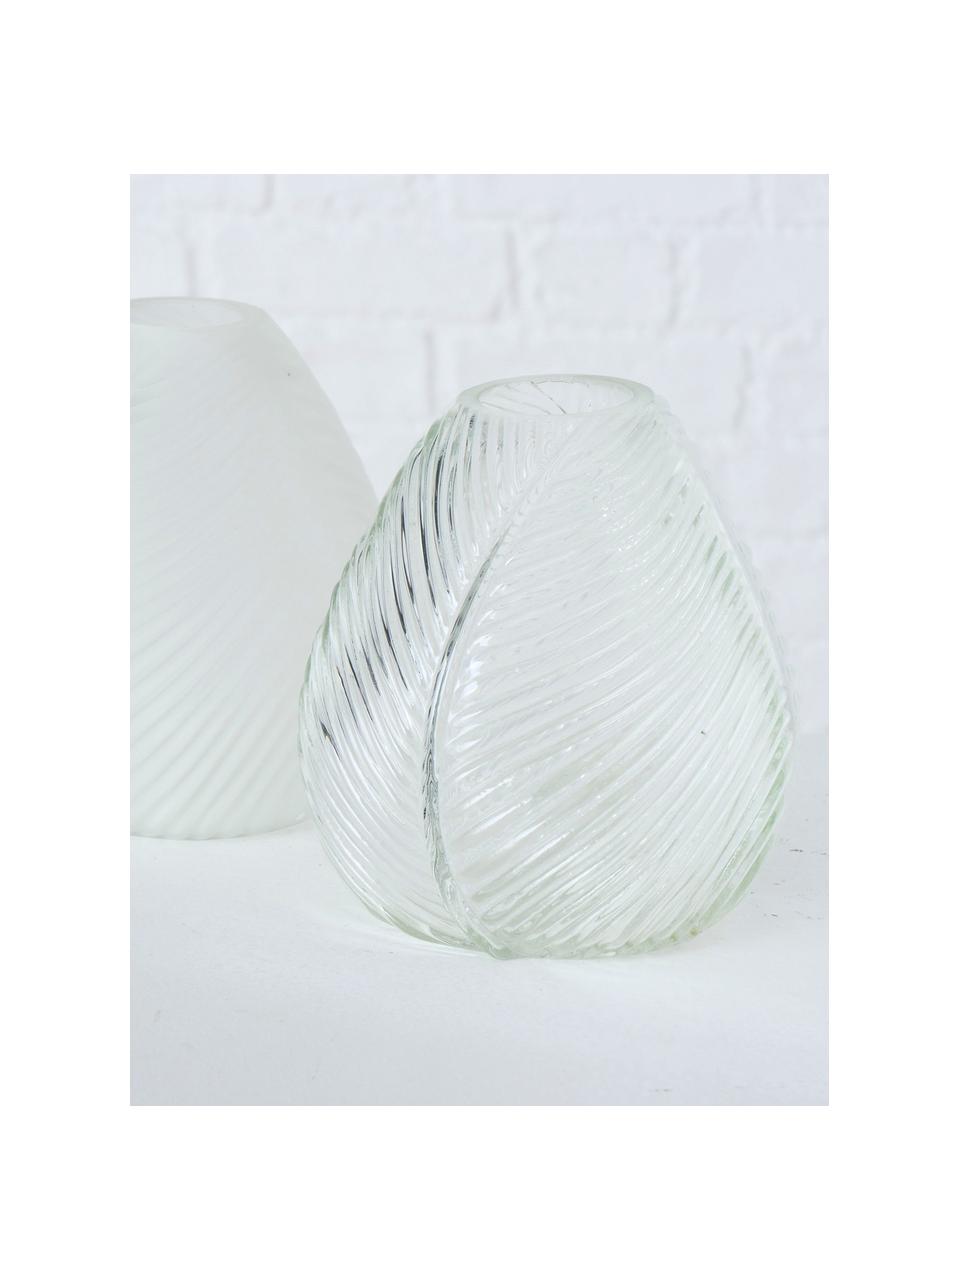 Súprava sklenených váz Lewin, 2 diely, Biela, priehľadná